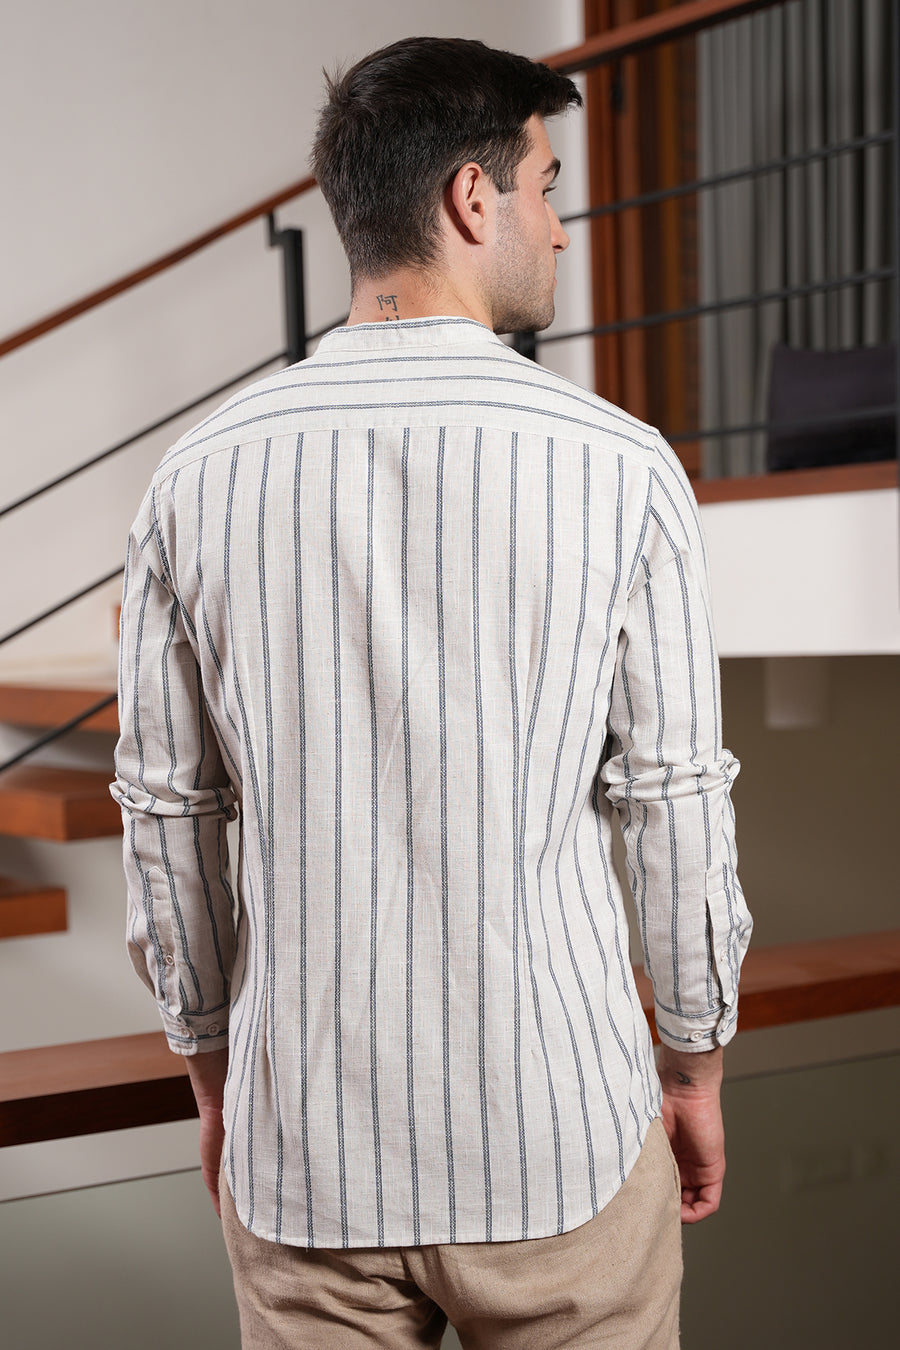 Guess - Cotton Linen Striped Shirt - Navy